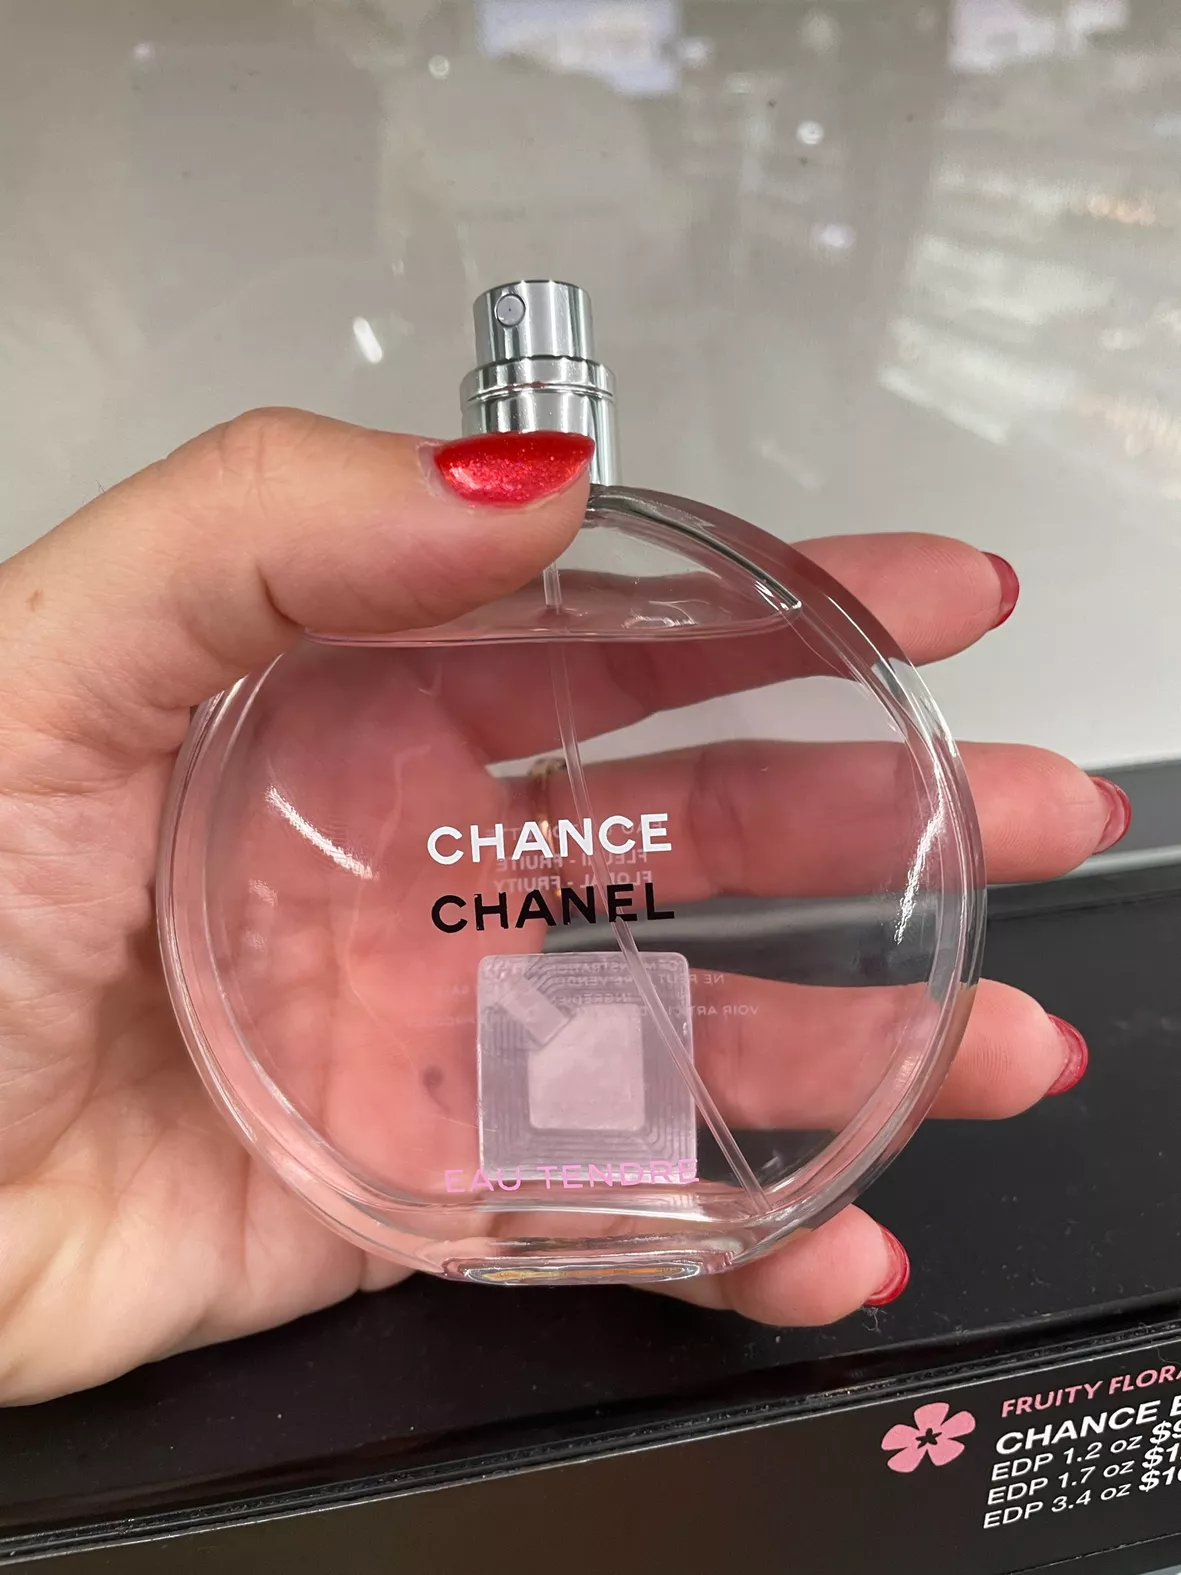 2-pc Chanel Chance Eau Tendre Eau De Parfum Gift Set for Sale in Portland,  OR - OfferUp